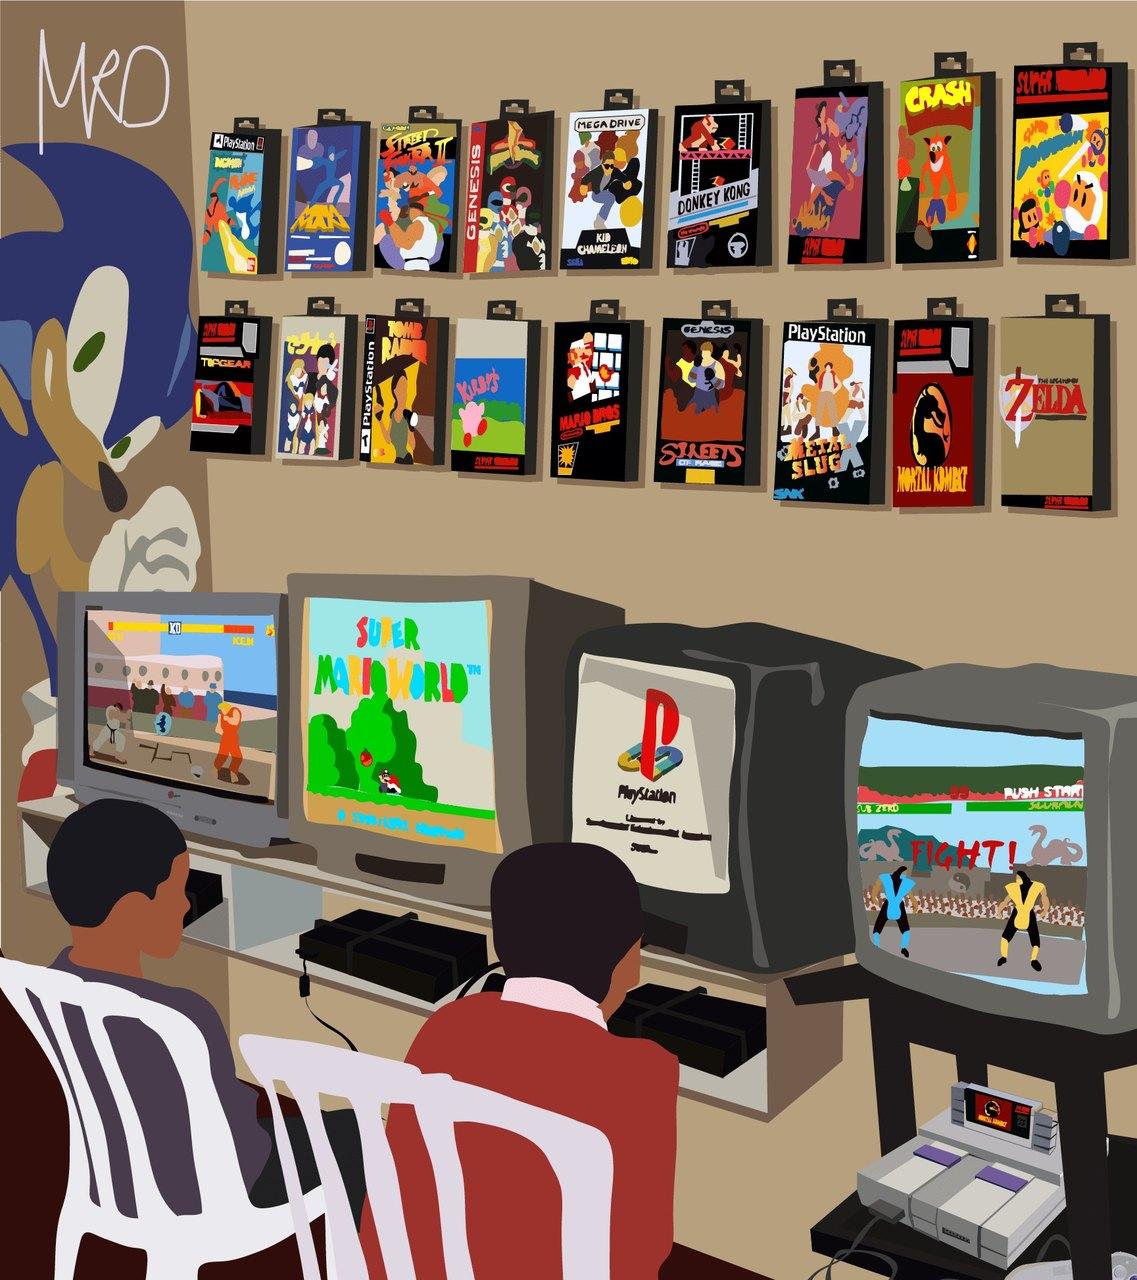 Ilustração de uma locadora de videogames cearense feita por Mário Maia Costa Neto